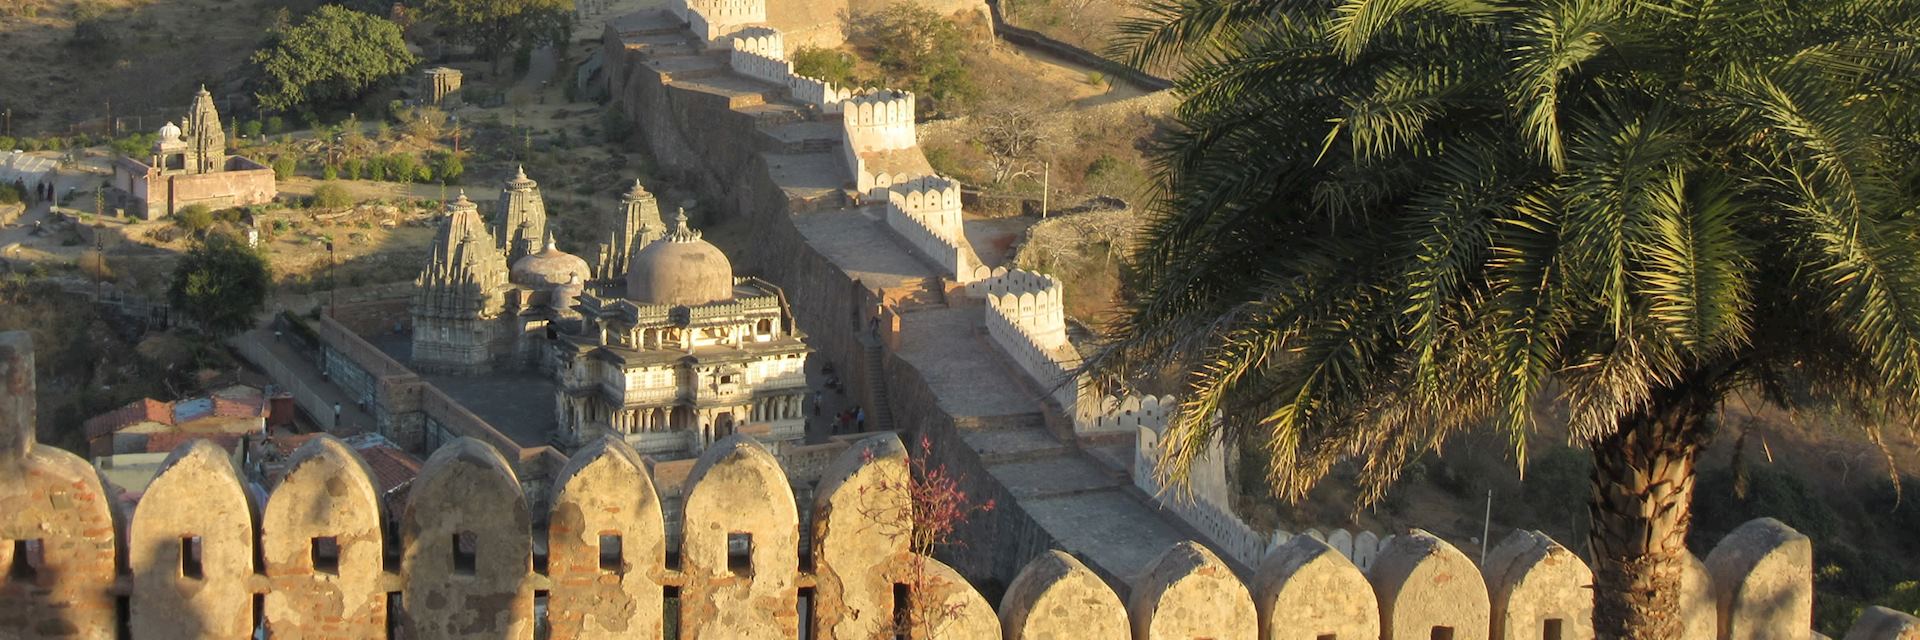 Kumbhalgarh Fortress